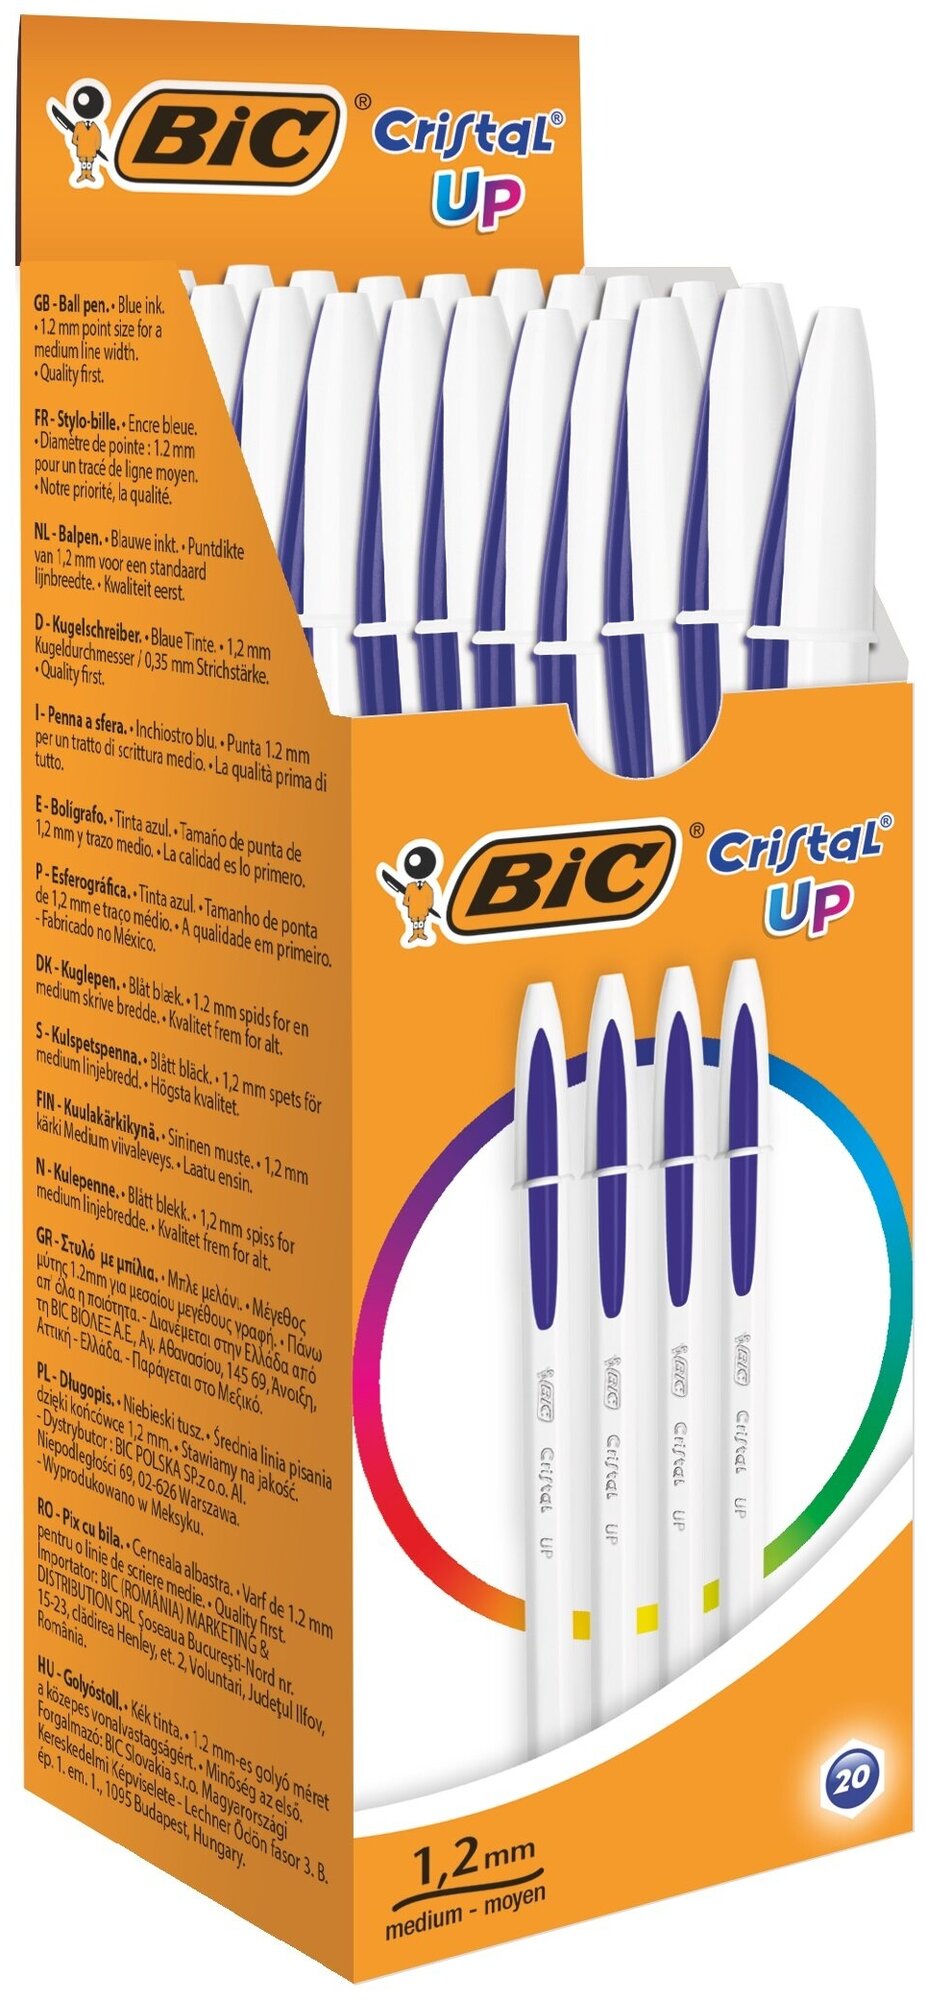 BIC Набор шариковых ручек Cristal UP, 1.2 мм (950446/949879/949880), 949879, синий цвет чернил, 20 шт.